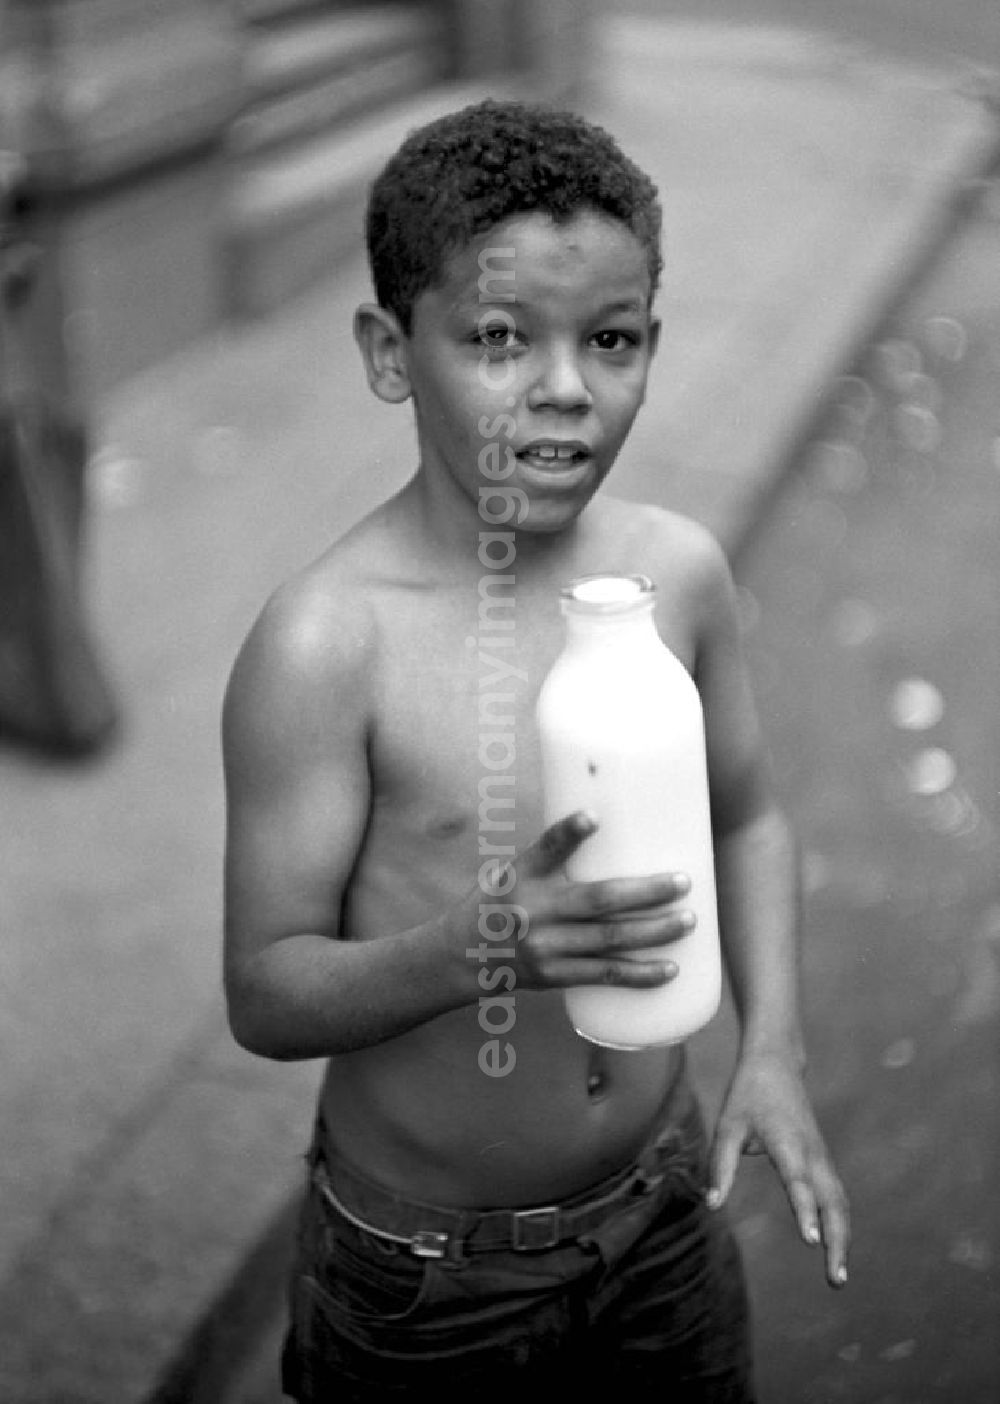 GDR photo archive: Havanna - Kubanischer Junge mit Milchflasche.